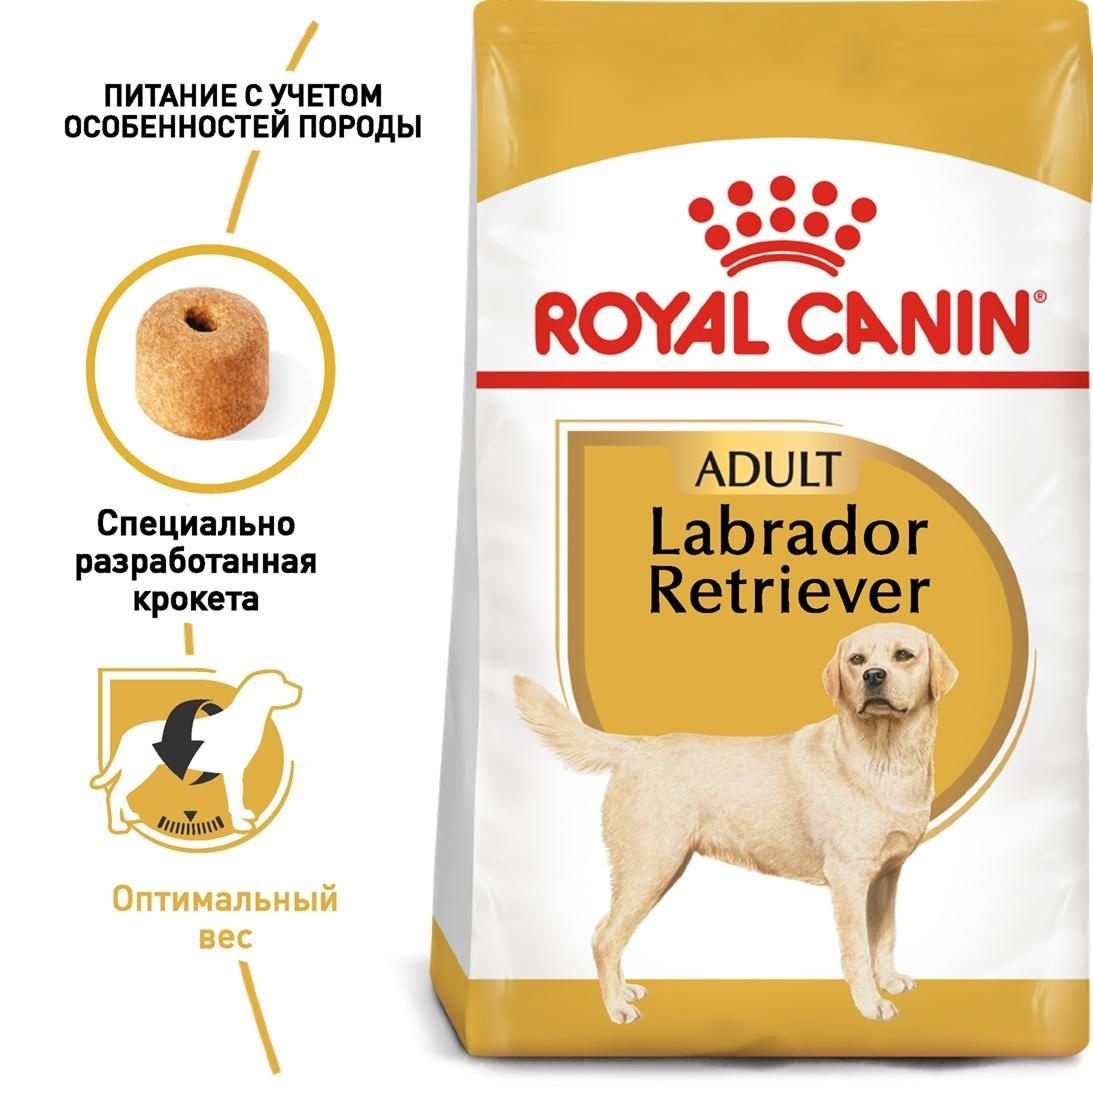 Для взрослого лабрадора с 15 мес. (3 кг) Royal Canin (сухие корма) Для взрослого лабрадора с 15 мес. (3 кг) - фото 2